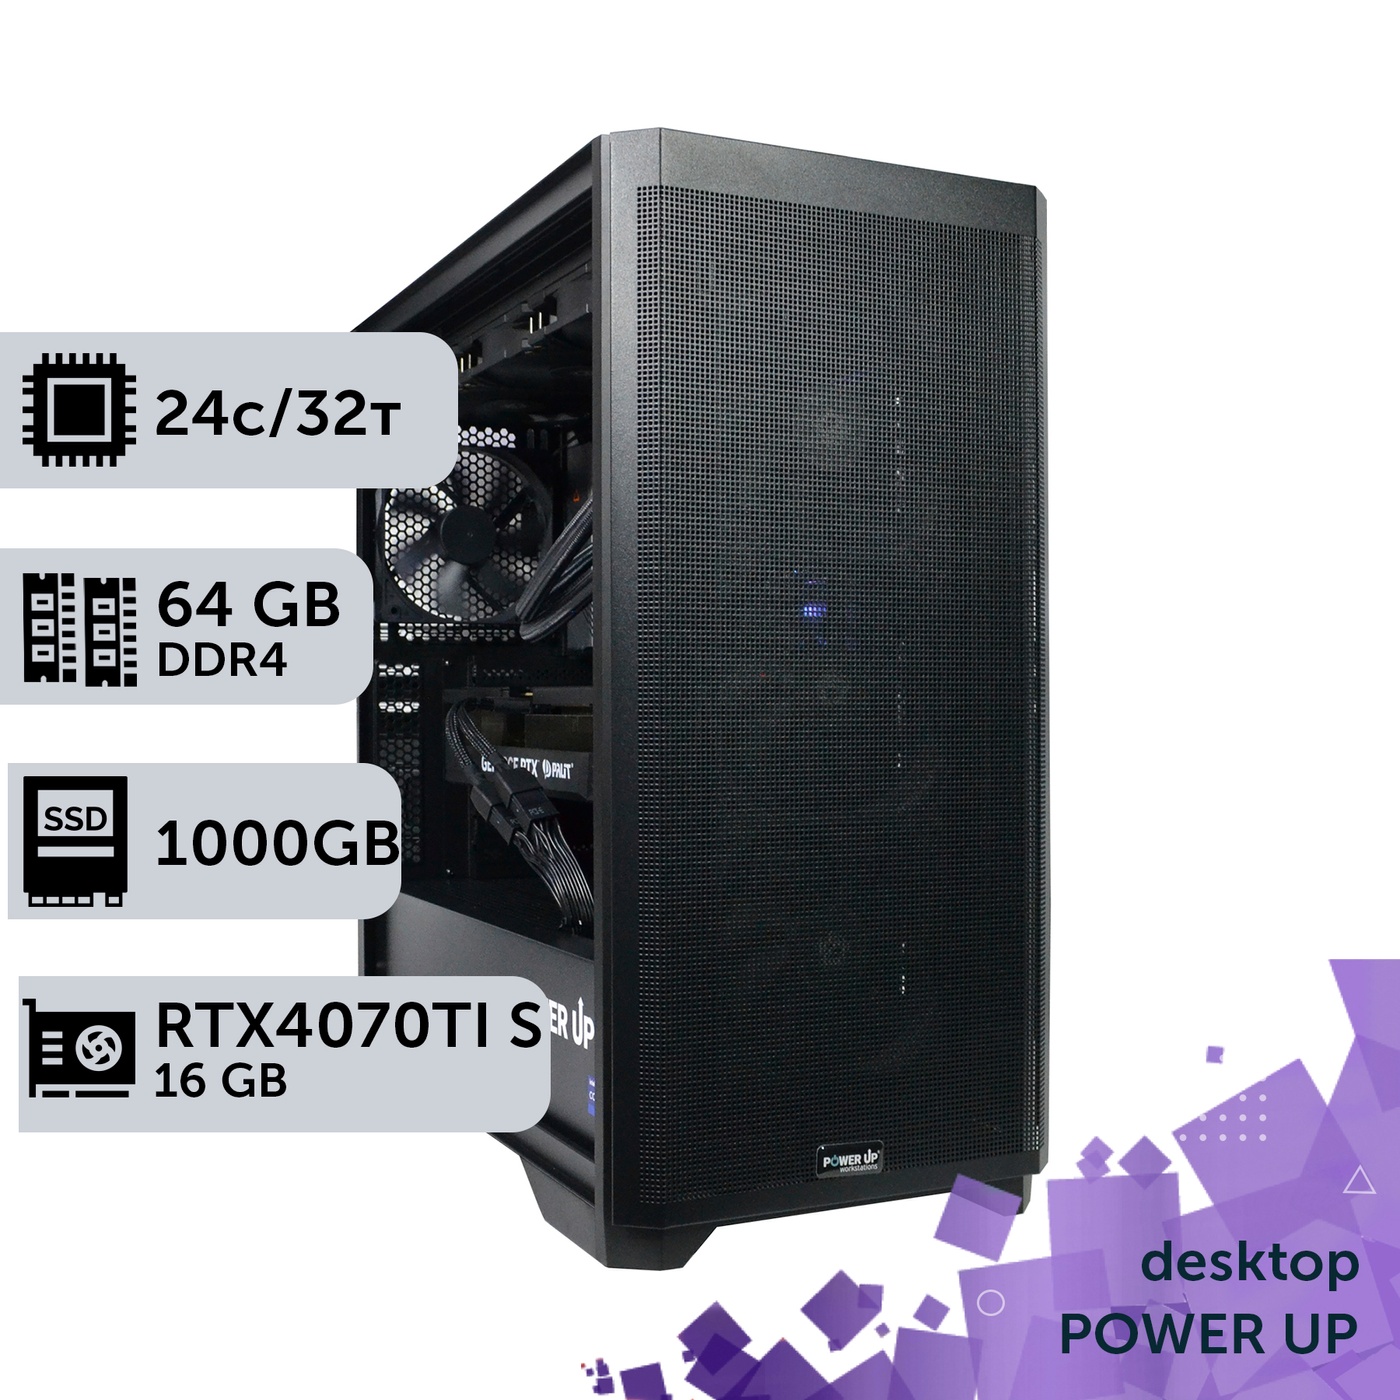 Робоча станція PowerUp Desktop #388 Core i9 14900K/64 GB/SSD 1TB/GeForce RTX 4070Ti Super 16GB